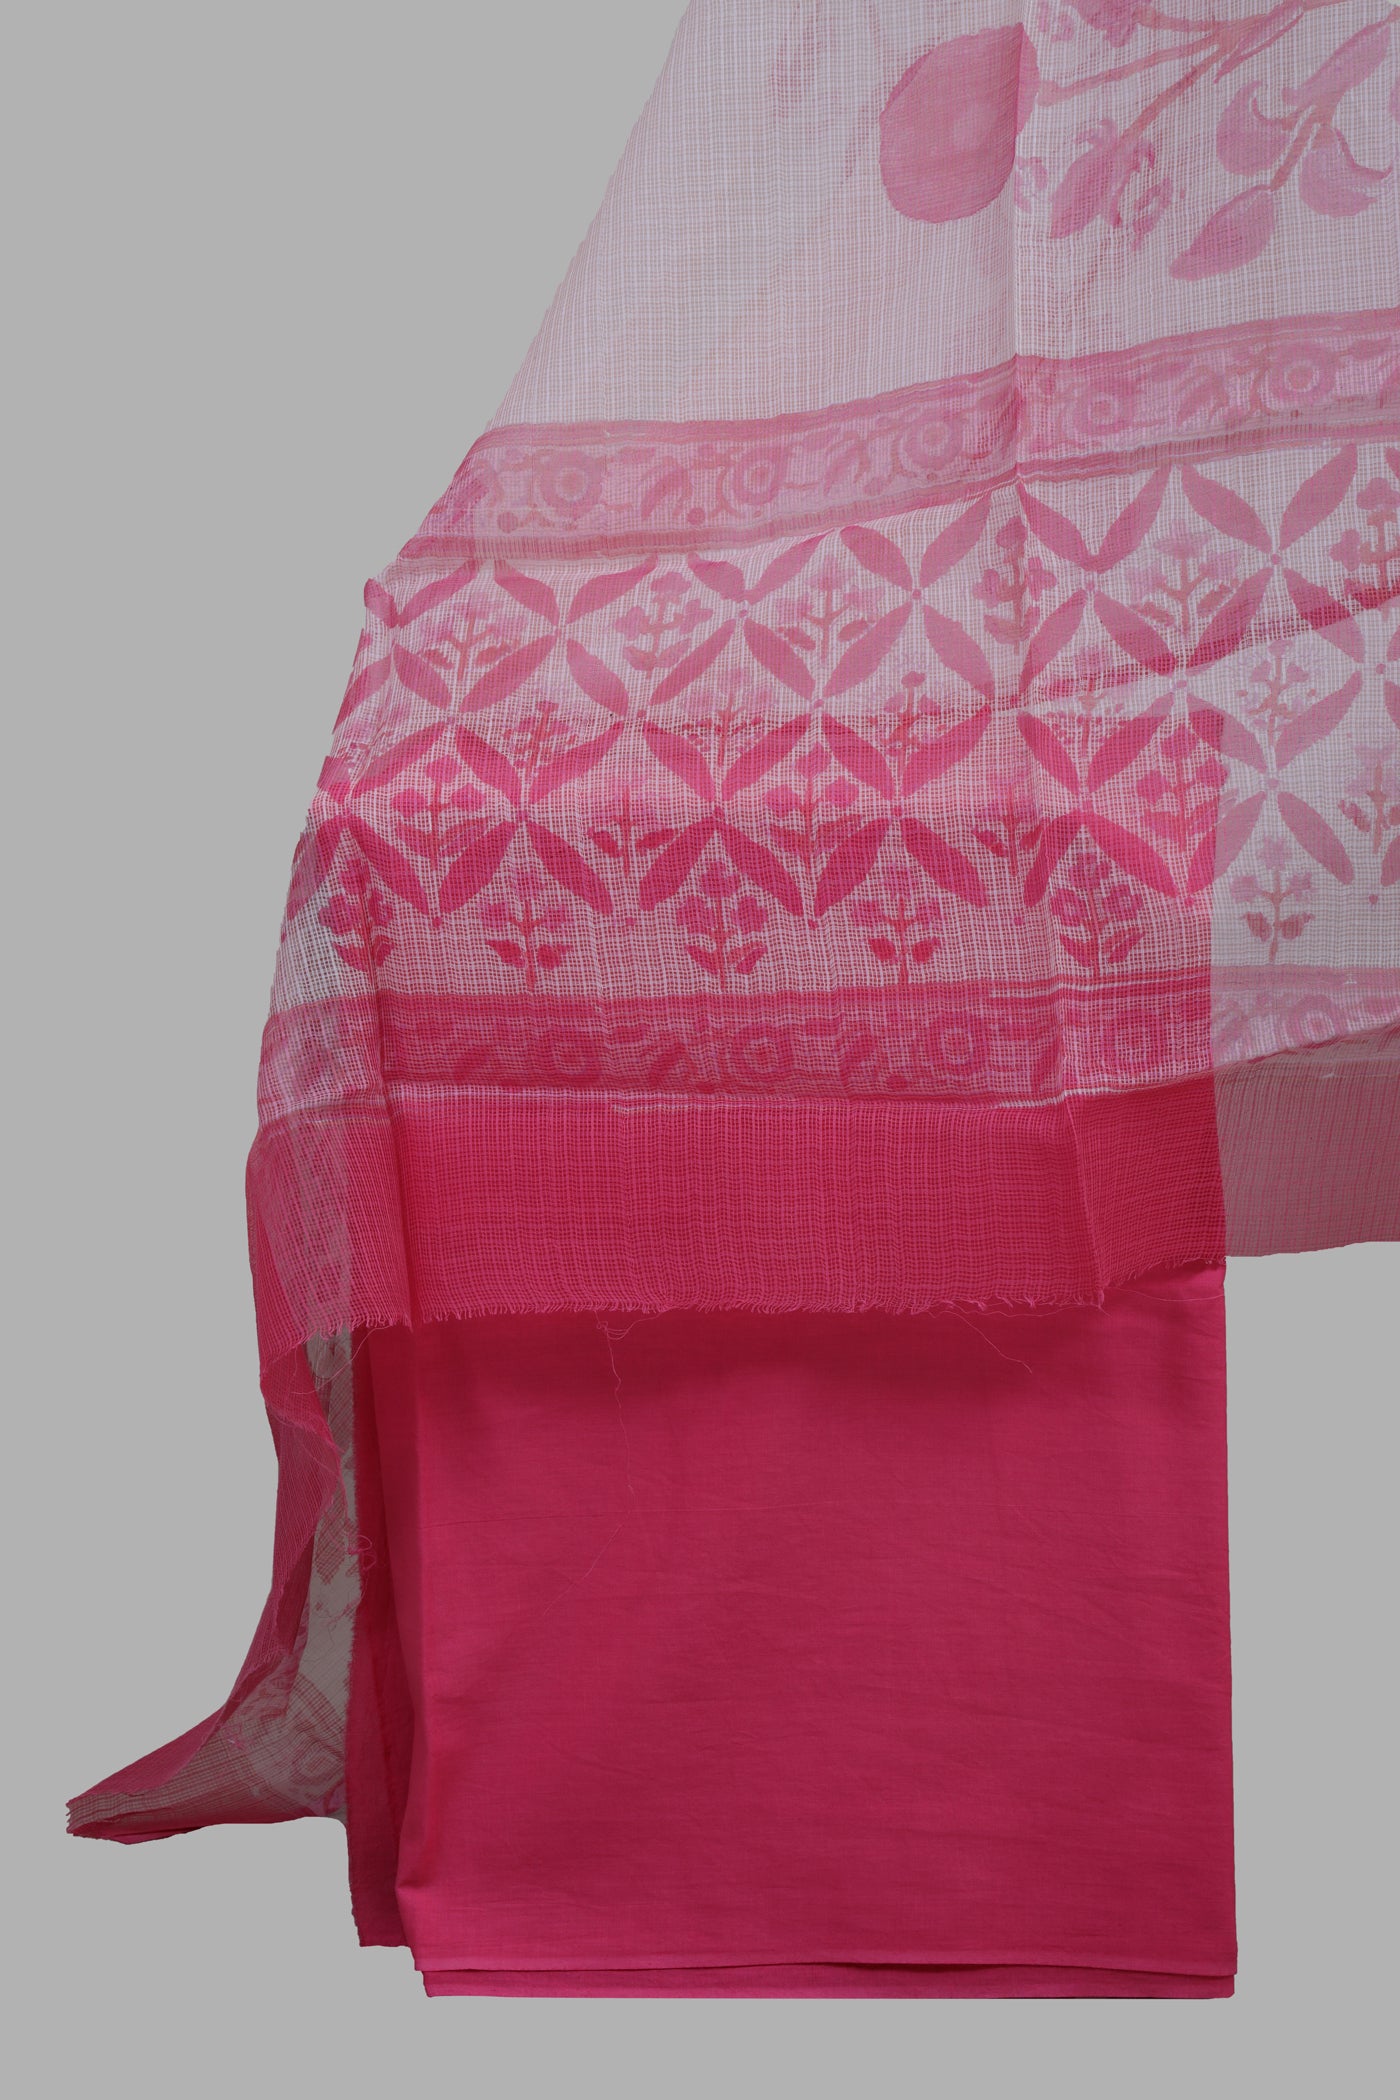 Block printed dress material in chanderi silk with kota doria dupatta